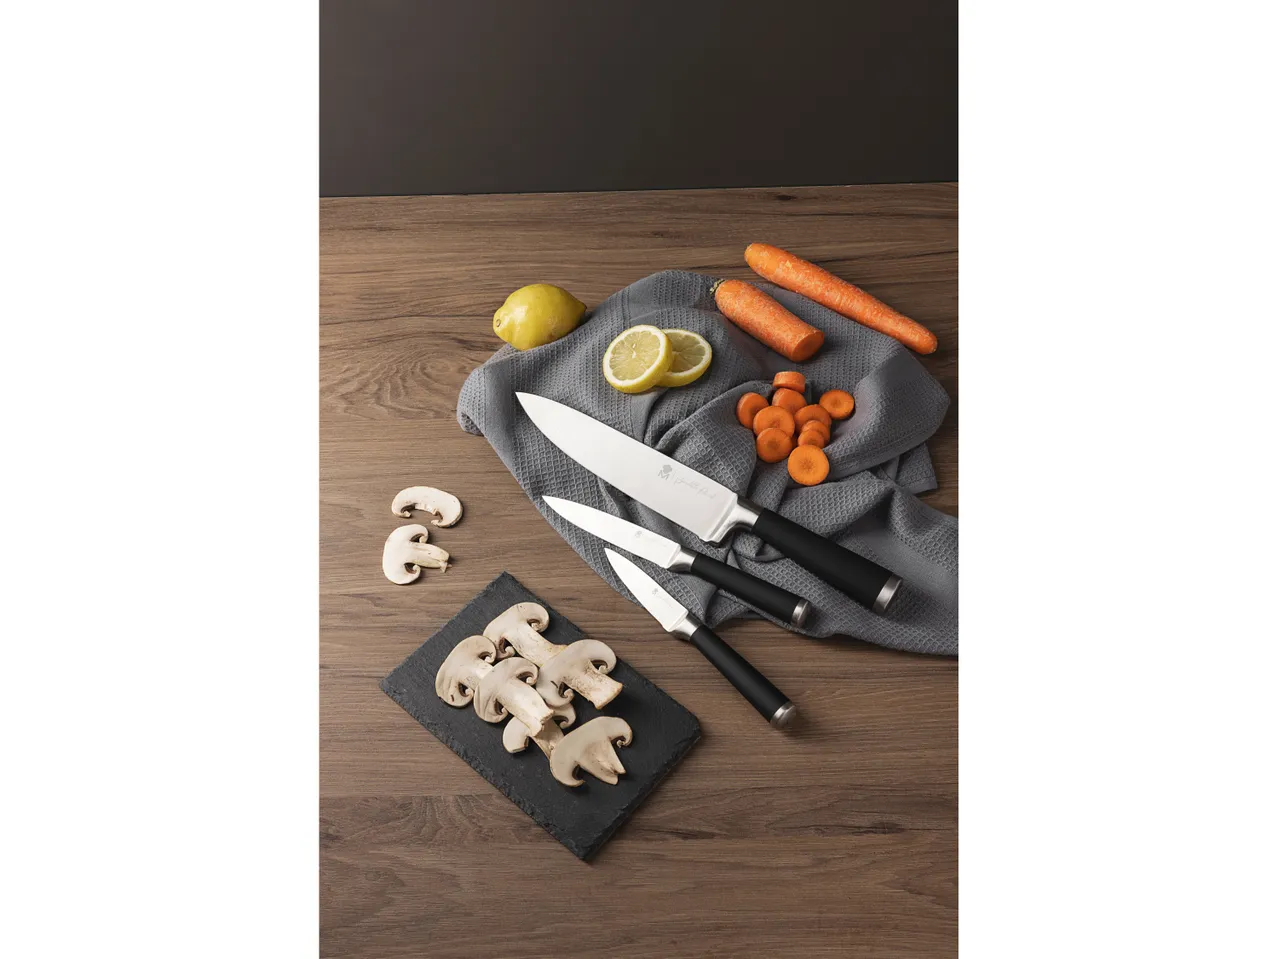 Set coltelli , prezzo 19.99 EUR 
Set coltelli 3 pezzi 
- Coltello chef, coltello ...